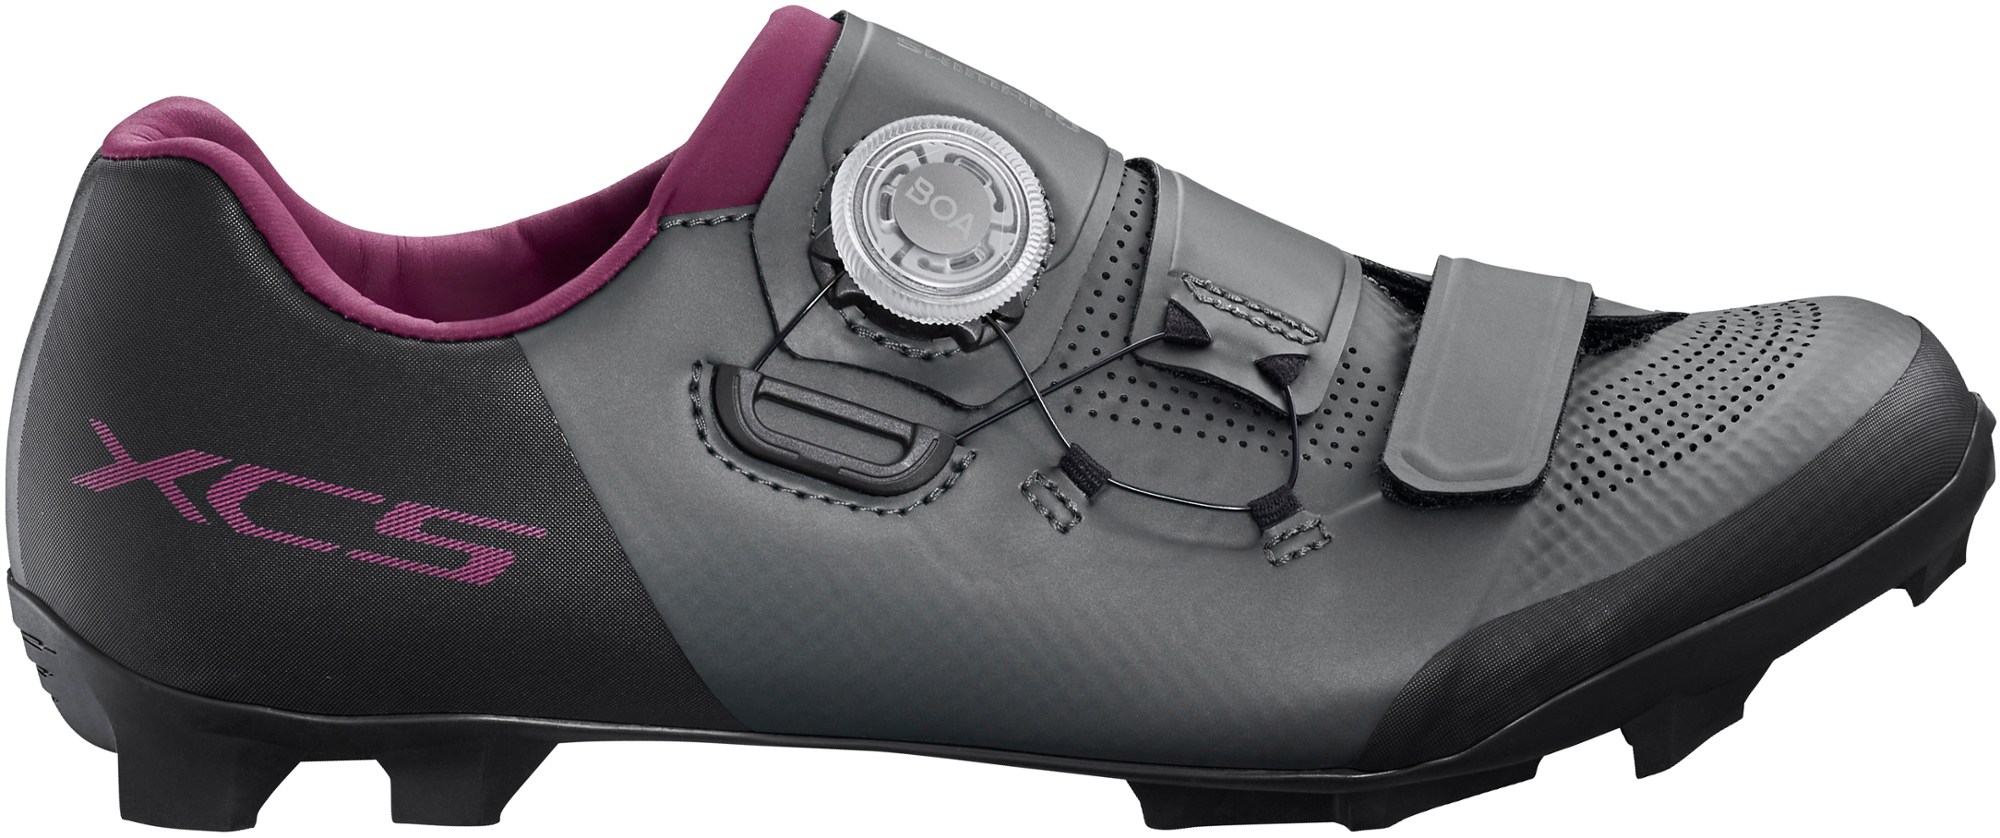 Обувь для горного велосипеда XC5 — женская Shimano, серый